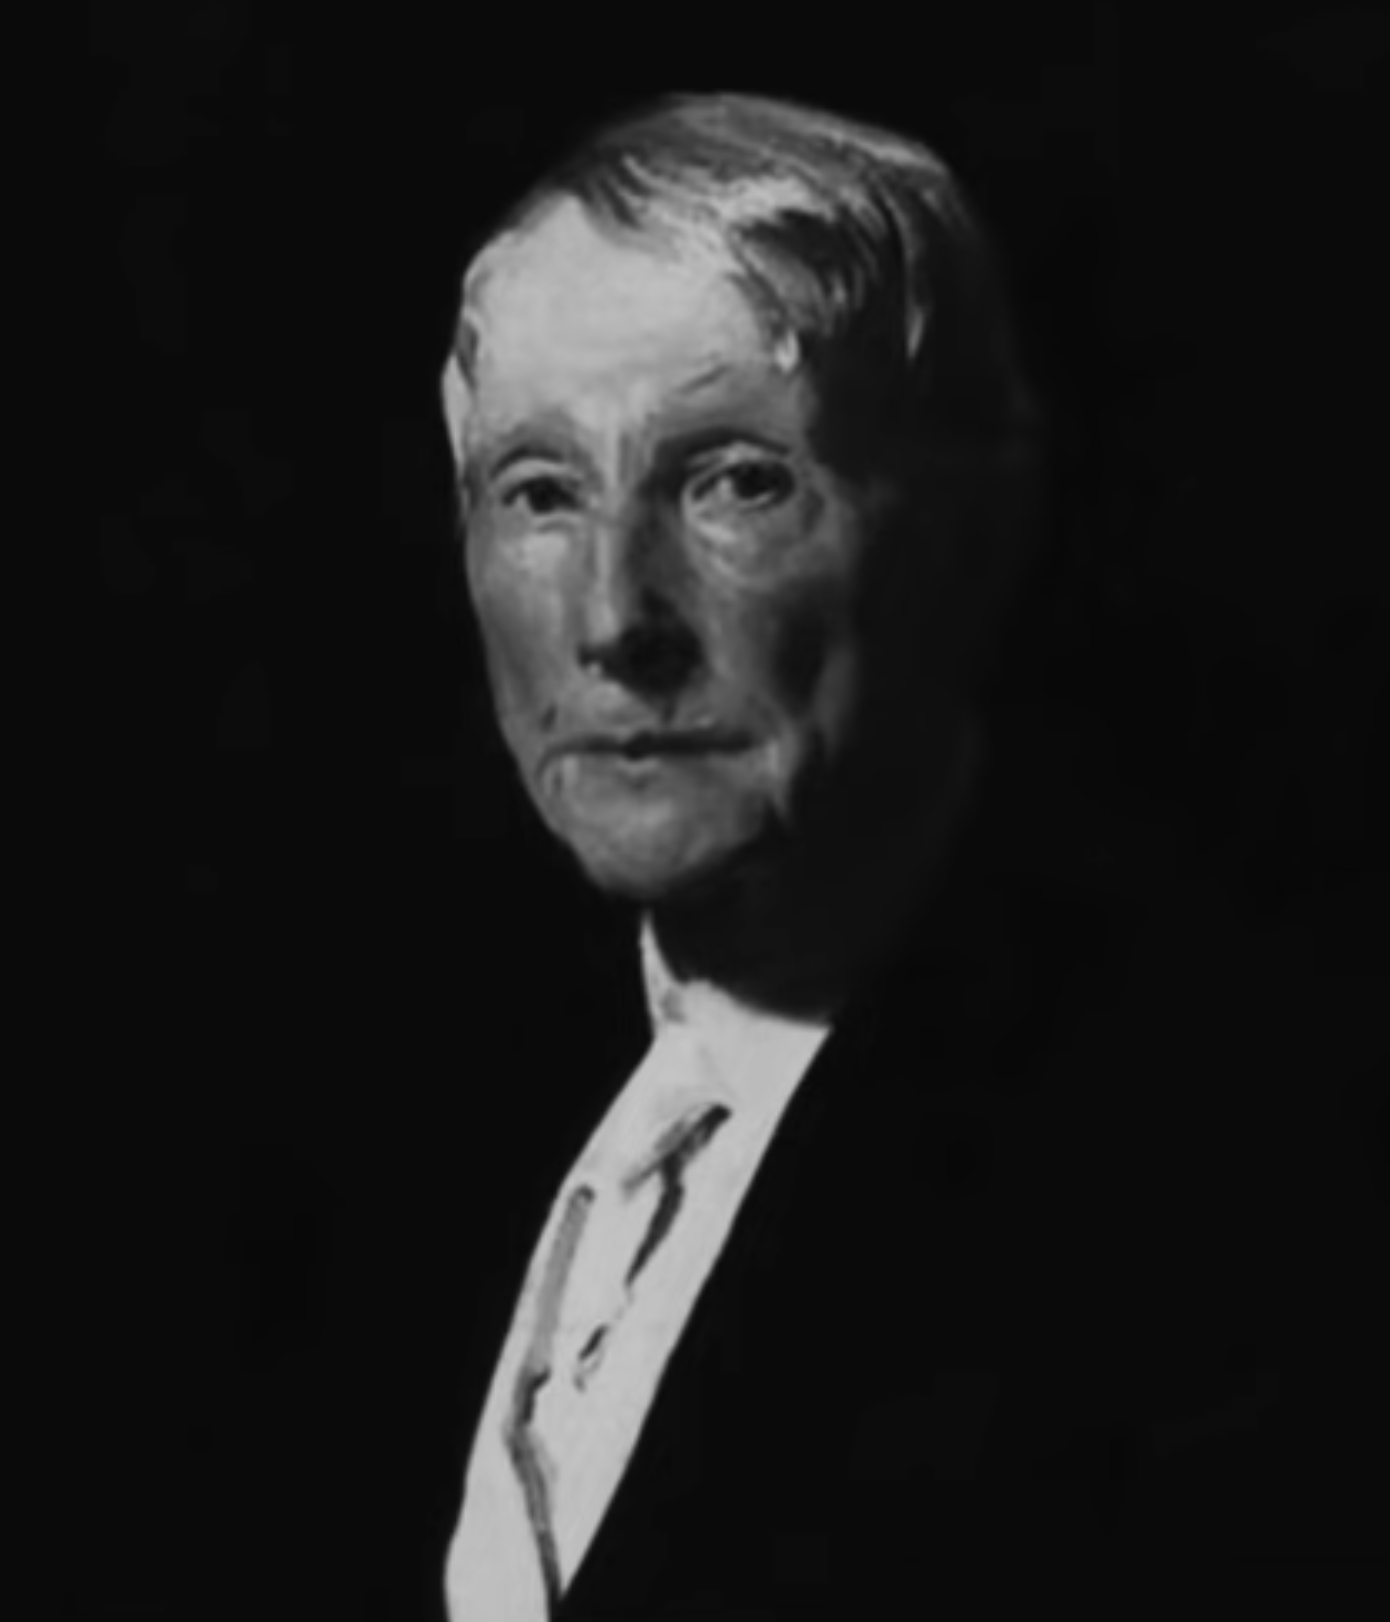 Portrait of John D. Rockefeller by Unknown